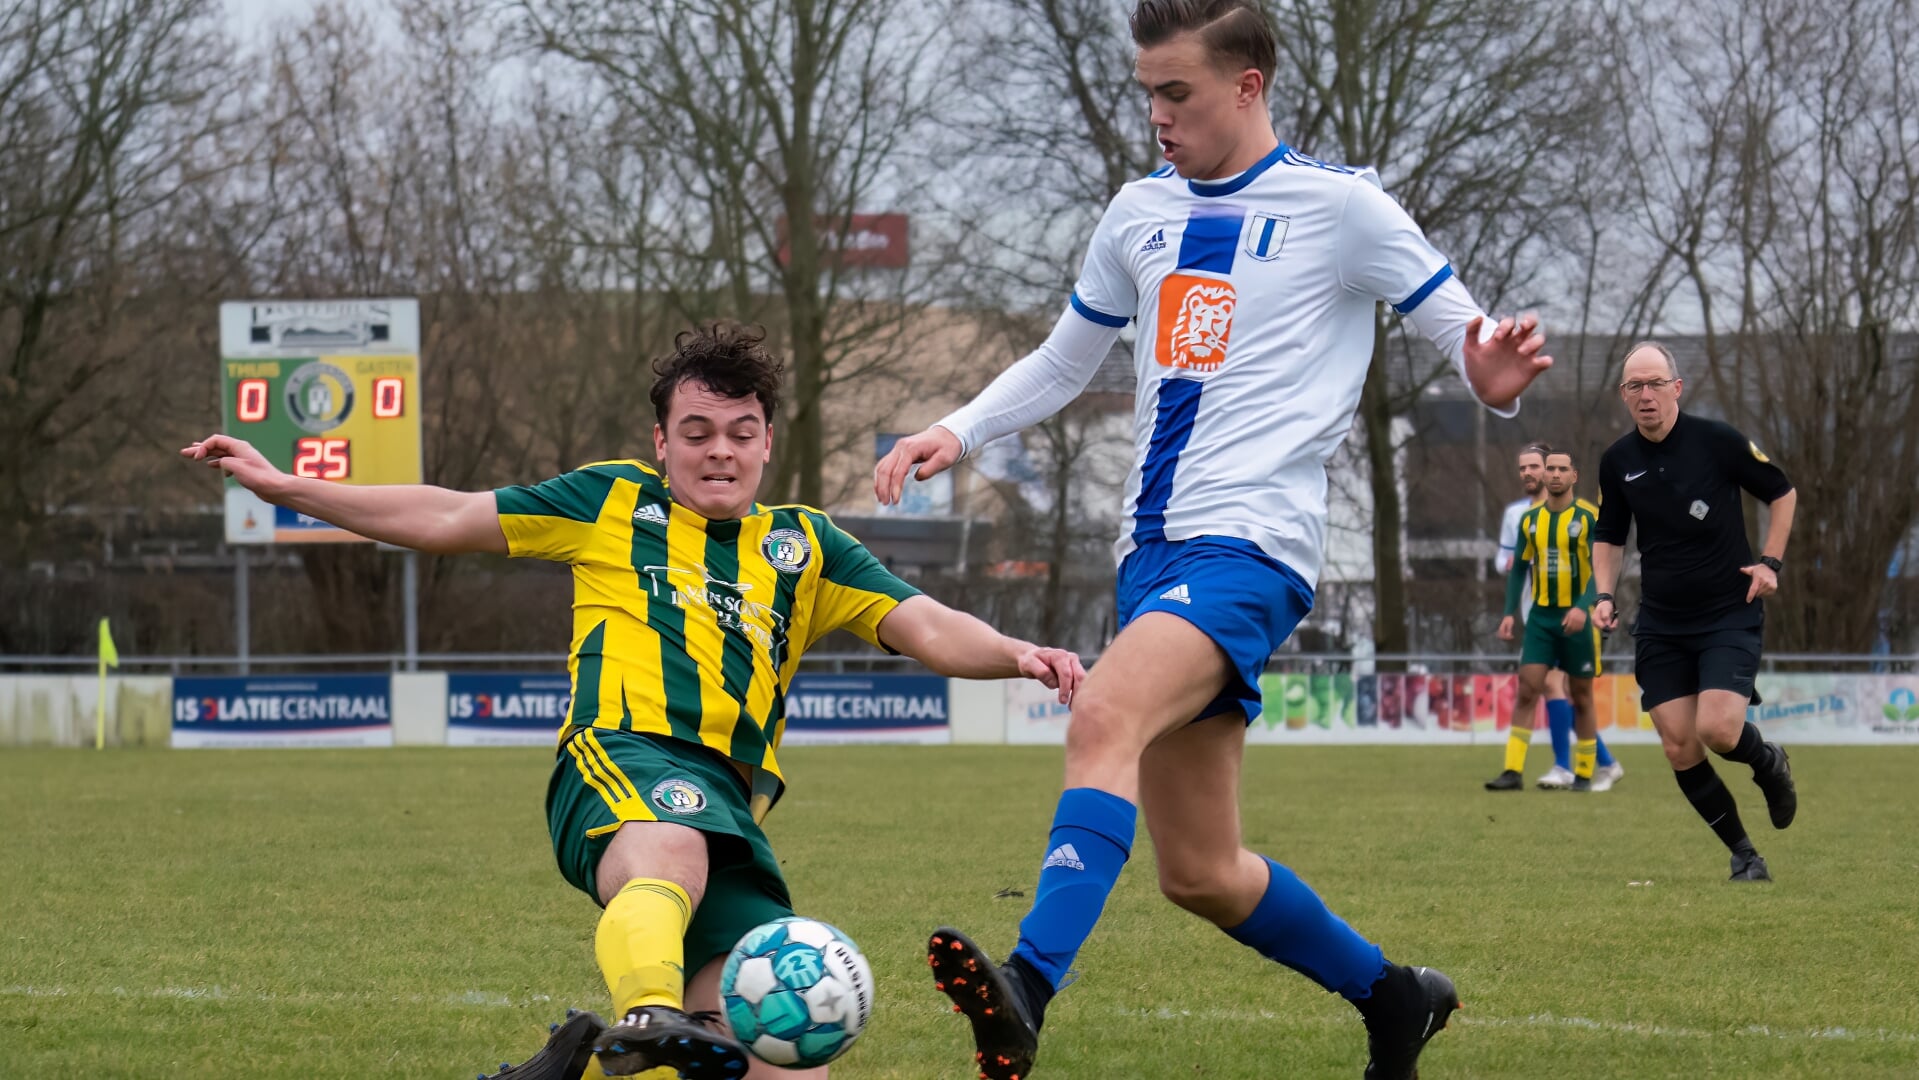 Brederodes - Elinkwijk ( 1-4)